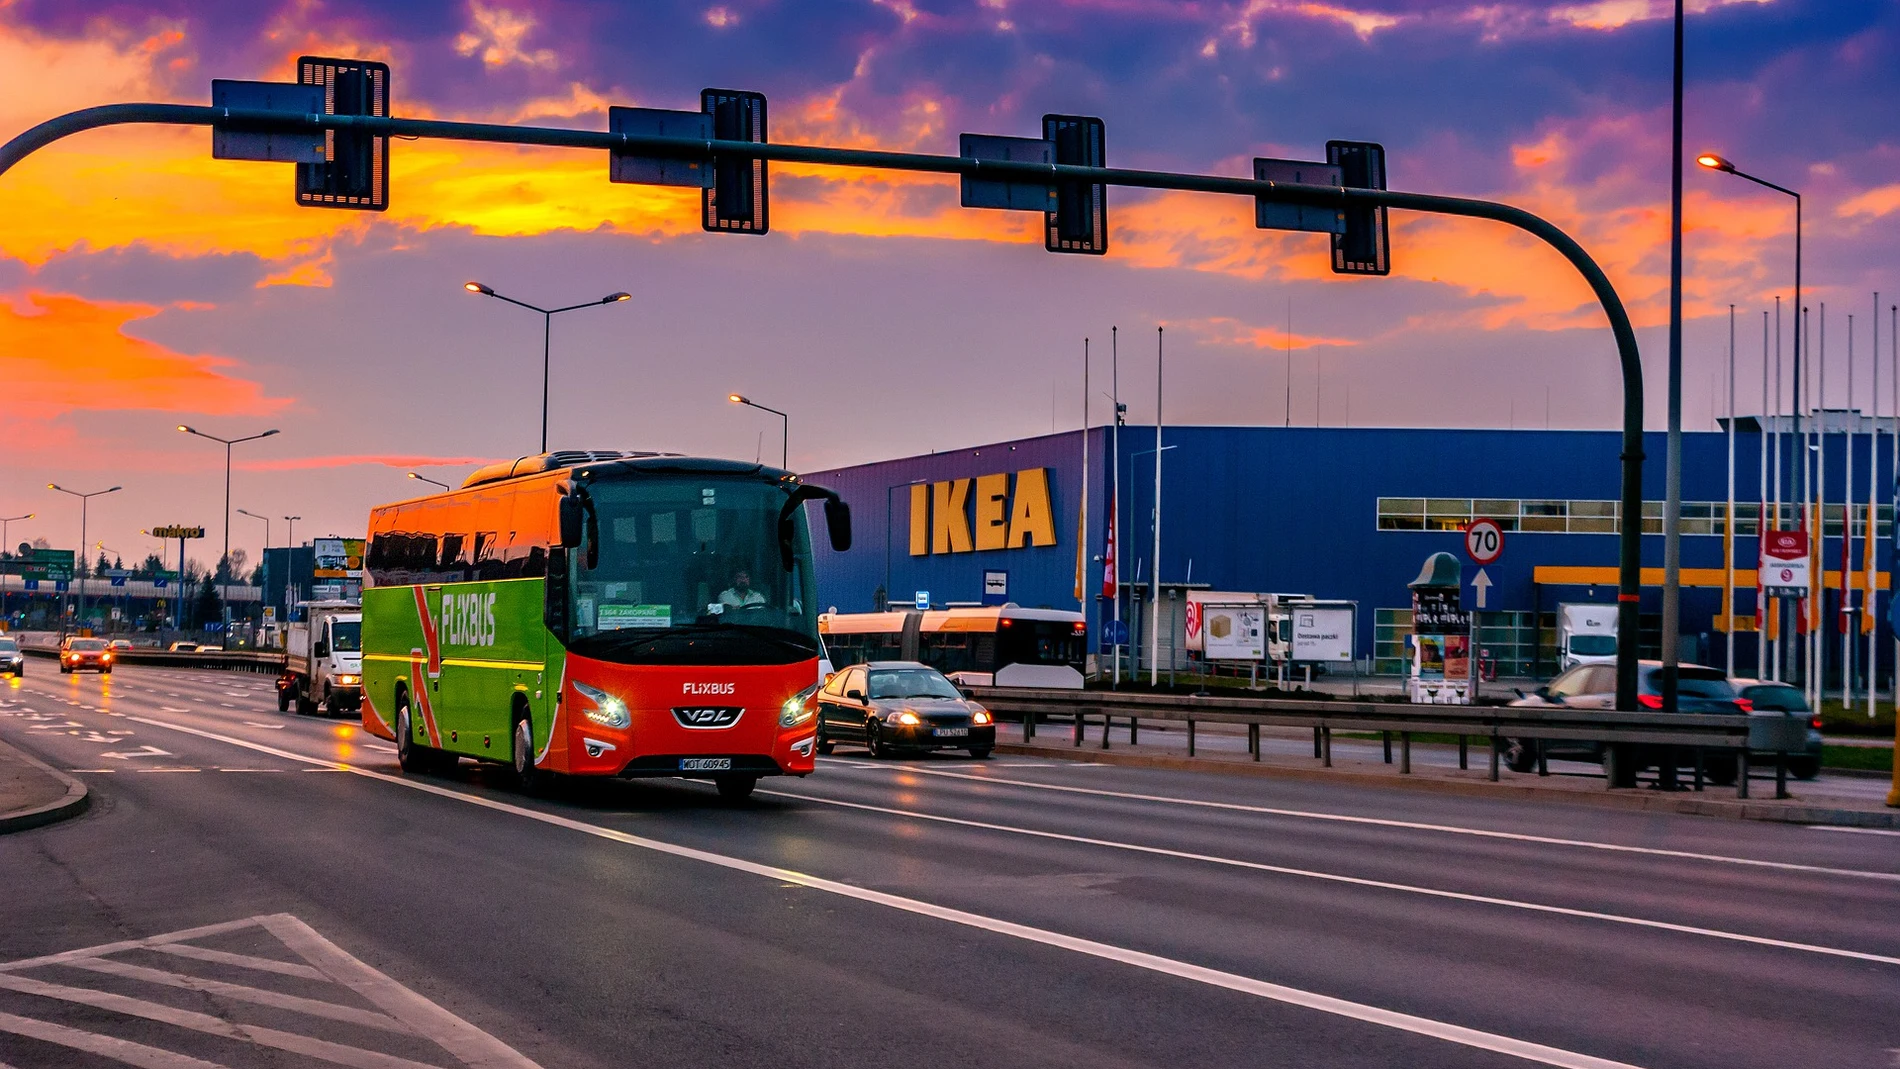 Gárgaras billetera montar IKEA implanta el alquiler de muebles en España para promover la economía  circular